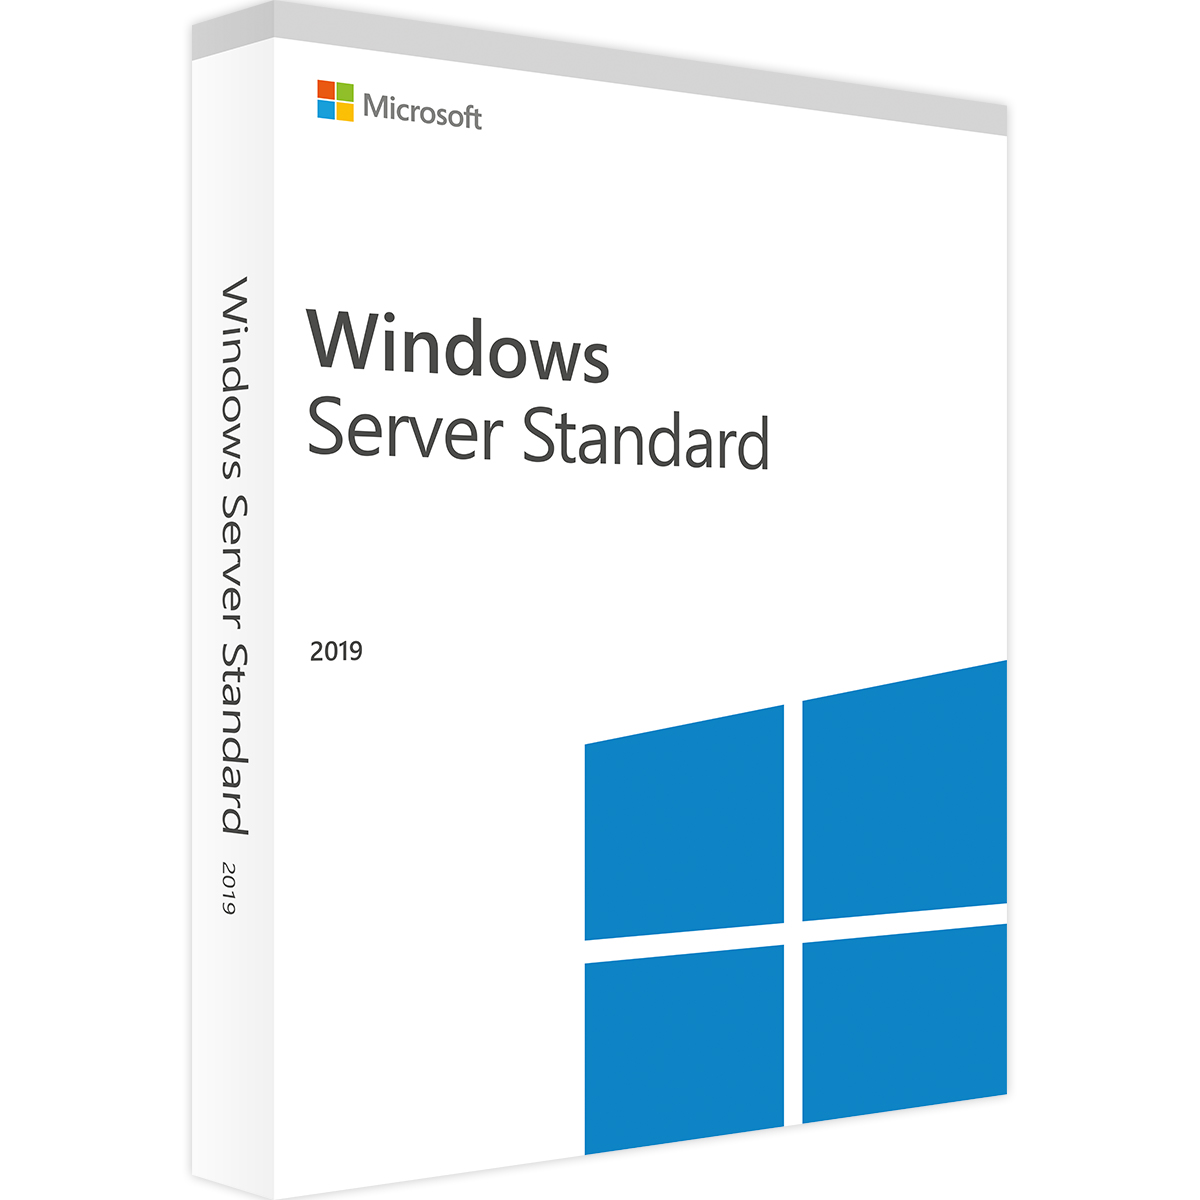 سیستم عامل ویندوز سرور مایکروسافت نسخه Standard 2019 